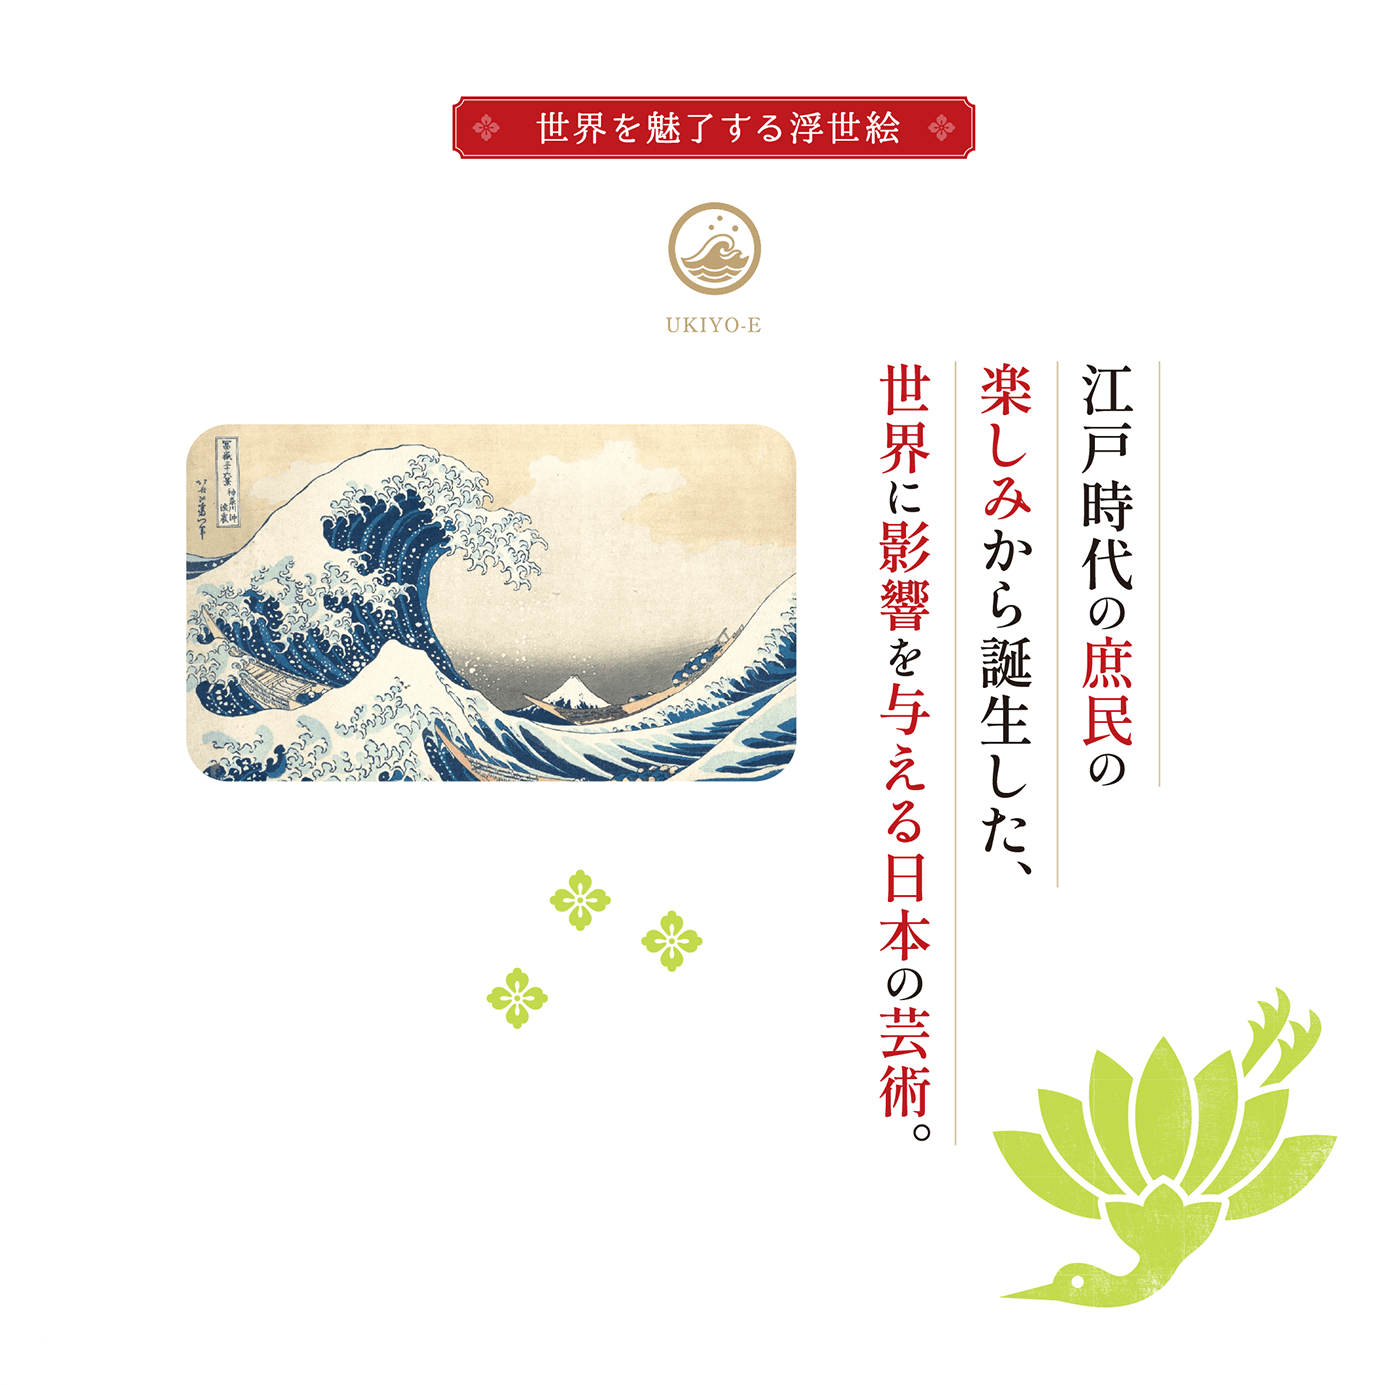 江戸時代の庶民の楽しみから誕生した、世界に影響を与える日本の芸術。